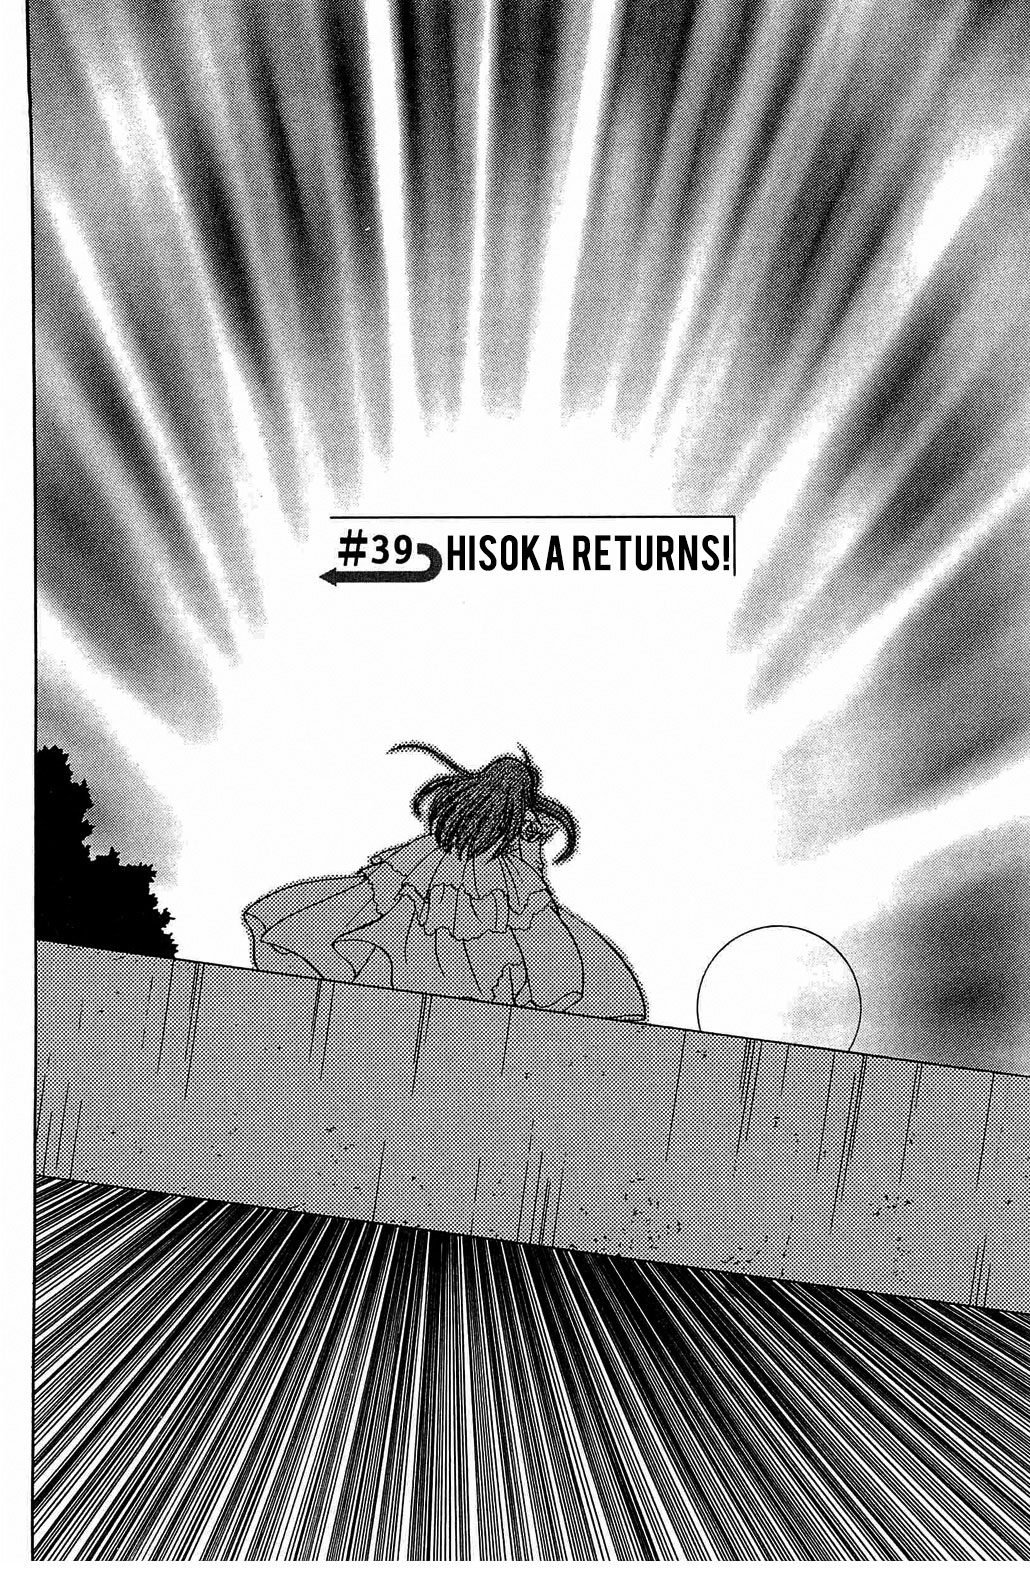 Hisoka Returns Vol.2 Chapter 39: Hisoka Returns! - Picture 2